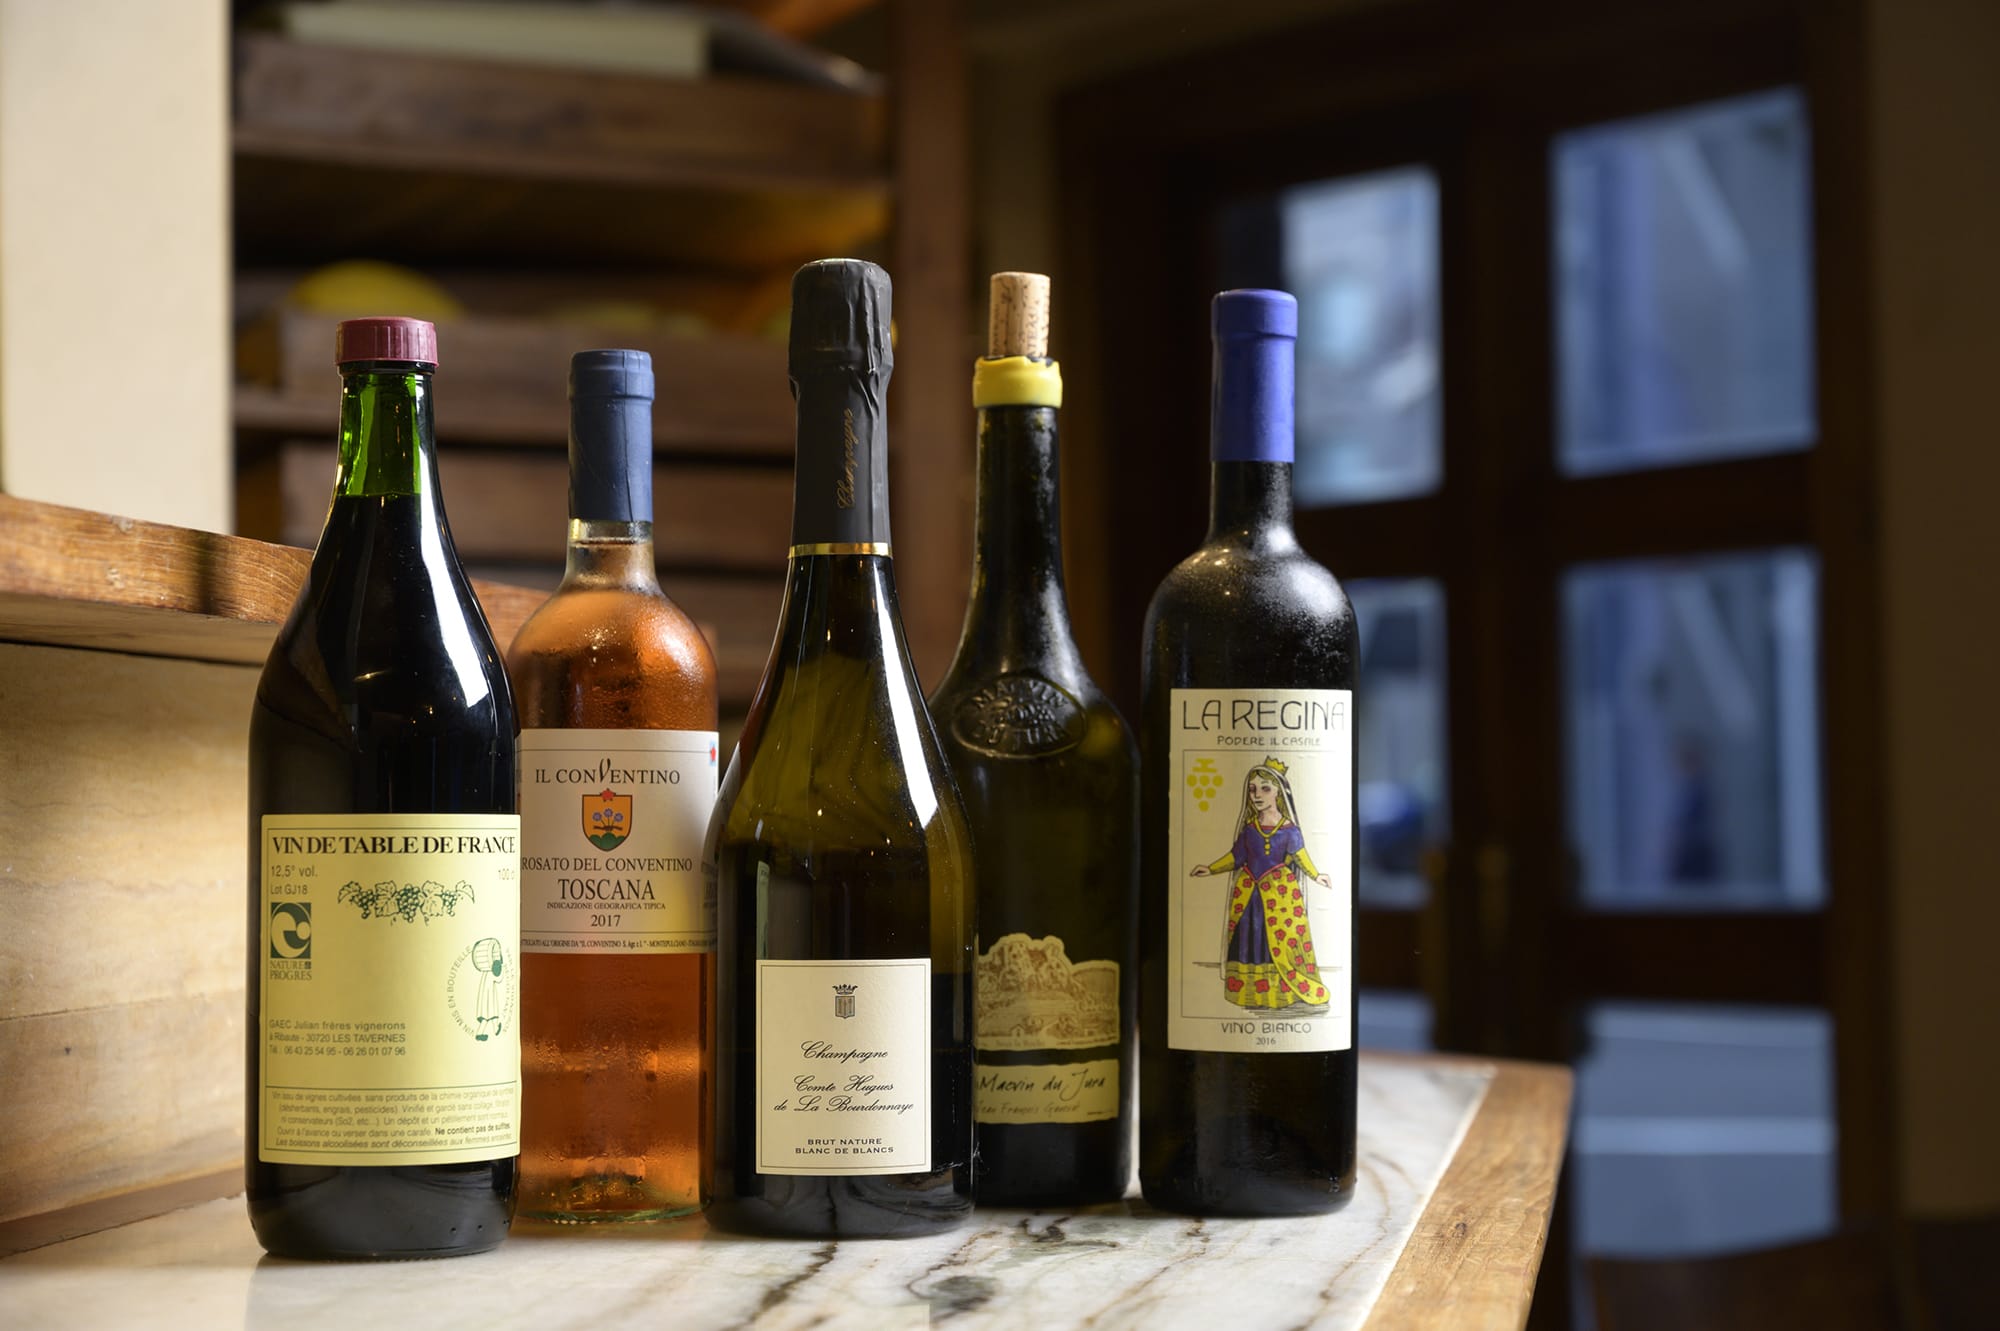 ソムリエでもある夫人の村上みひろのセレクションは、トスカーナやシャンパーニュなど、多彩な産地のビオワイン。